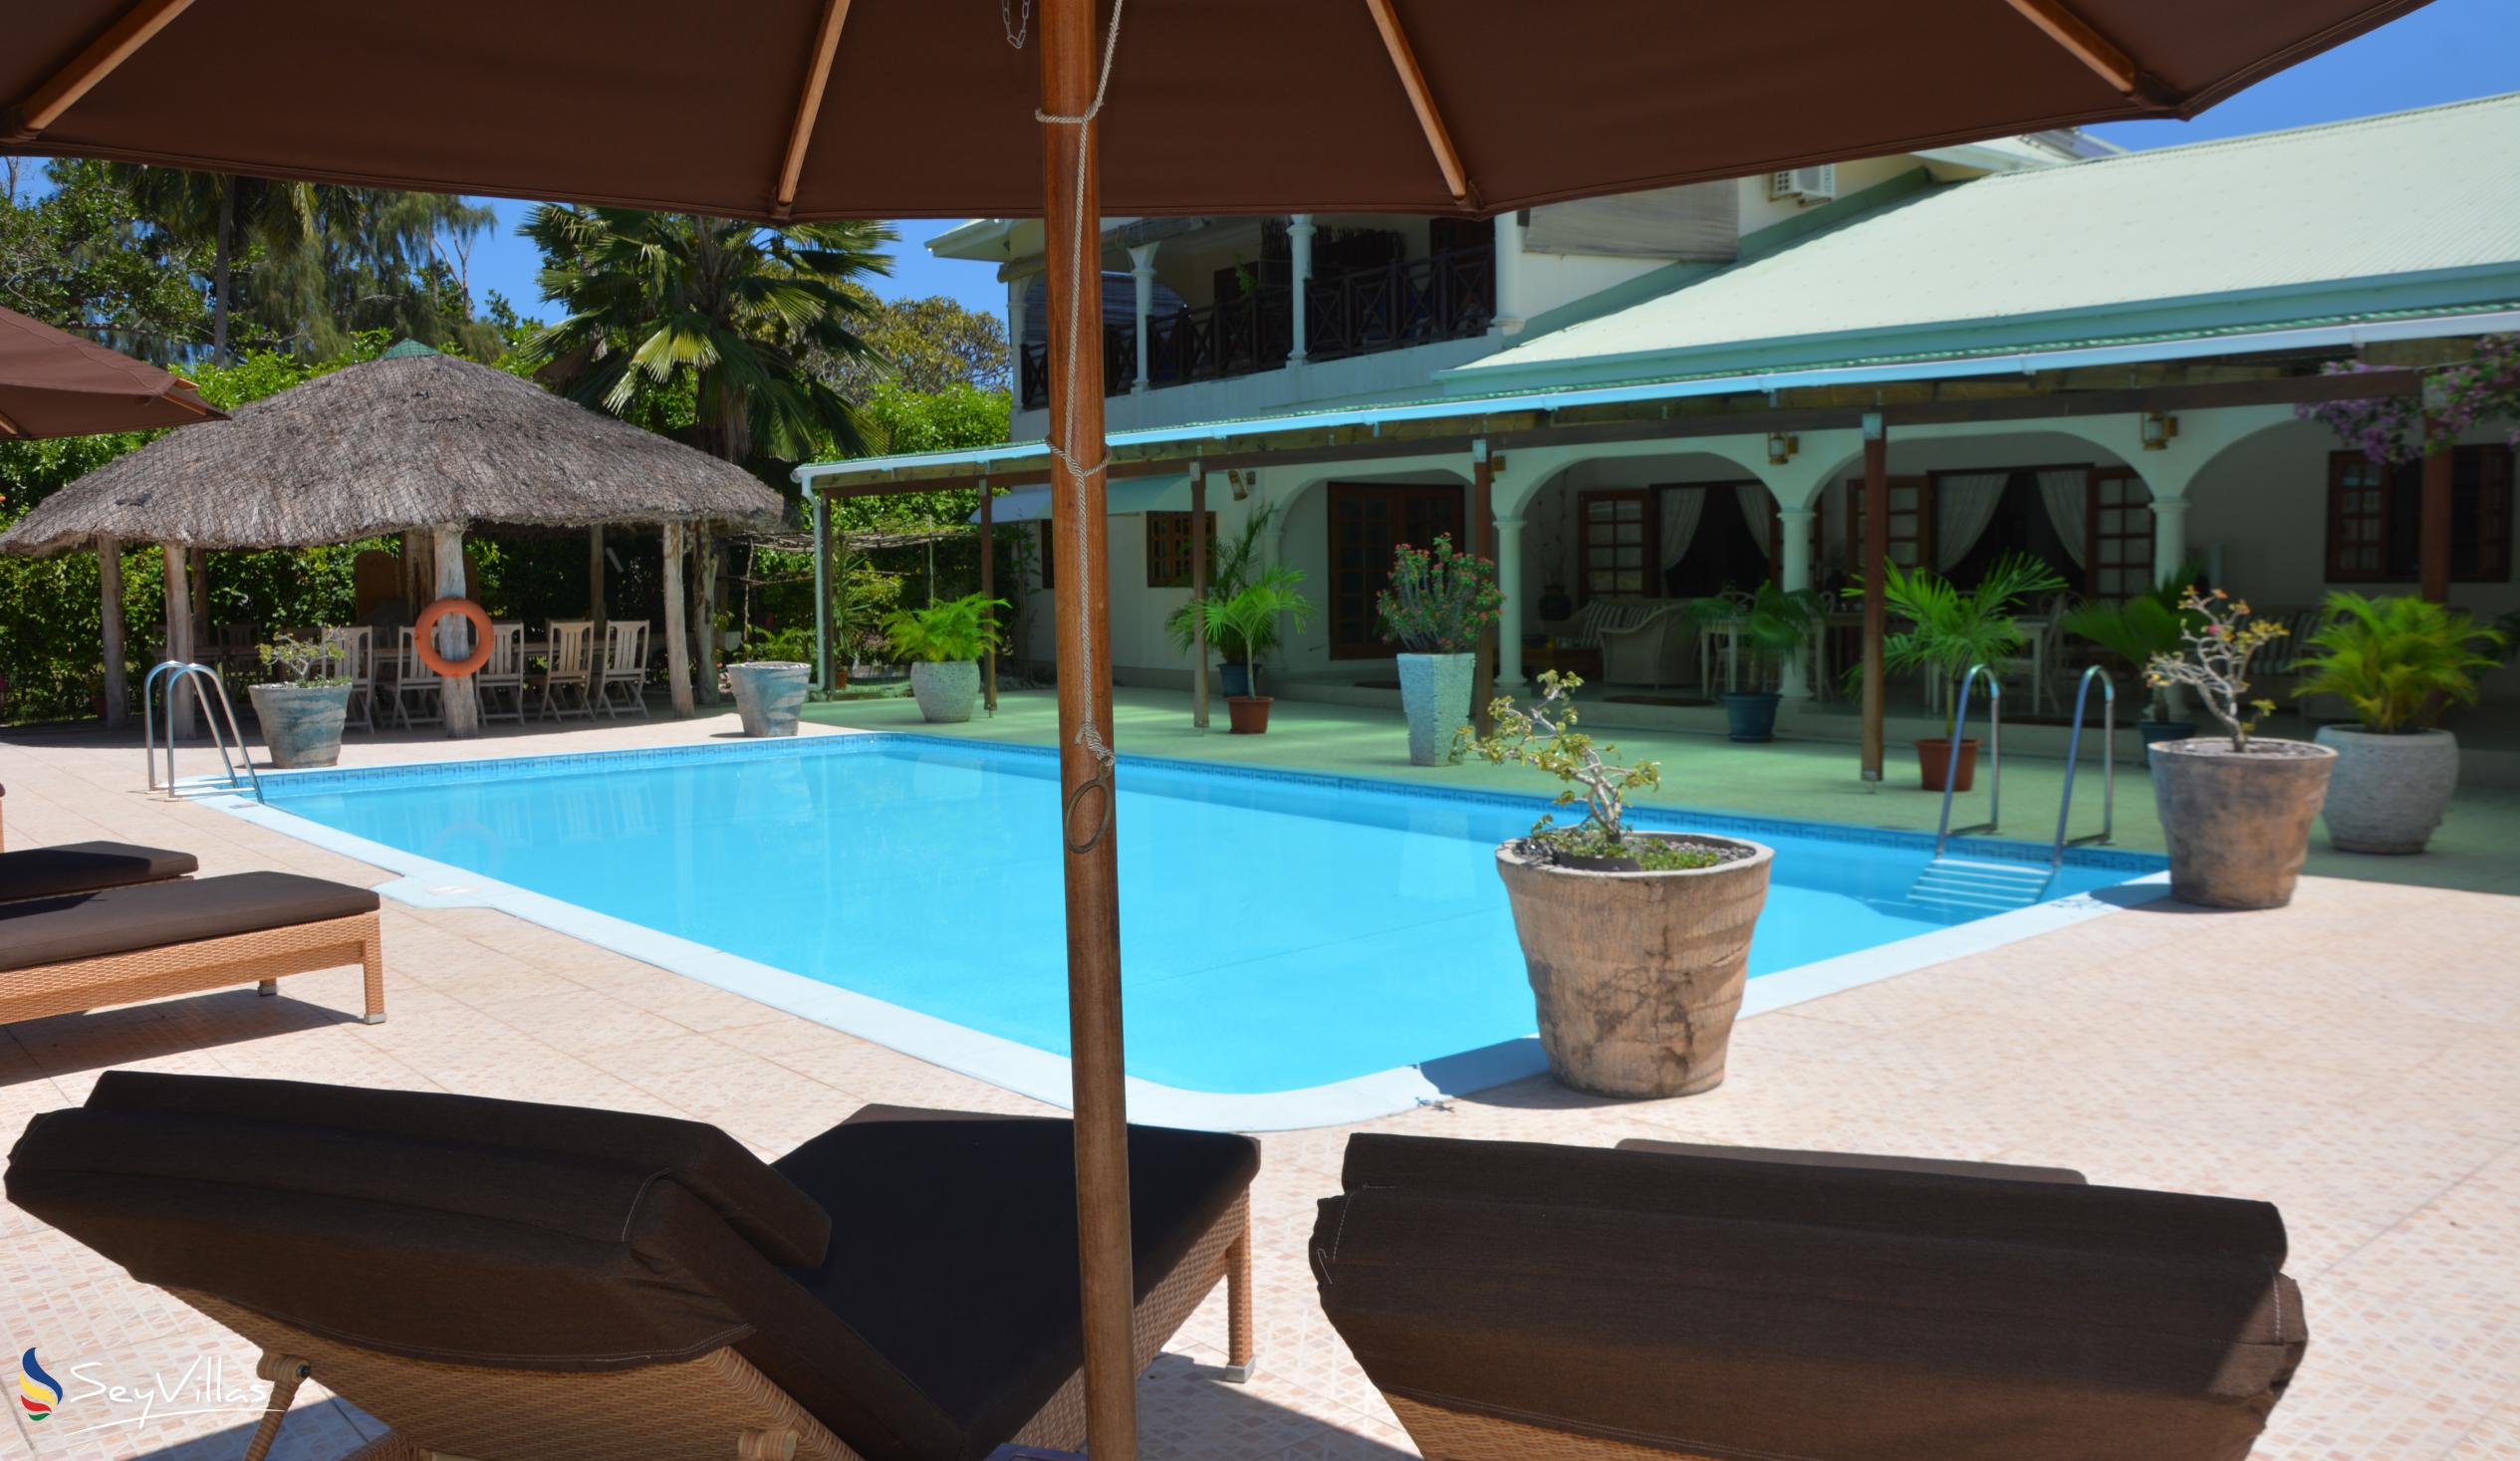 Foto 8: Villa de Cerf - Aussenbereich - Cerf Island (Seychellen)